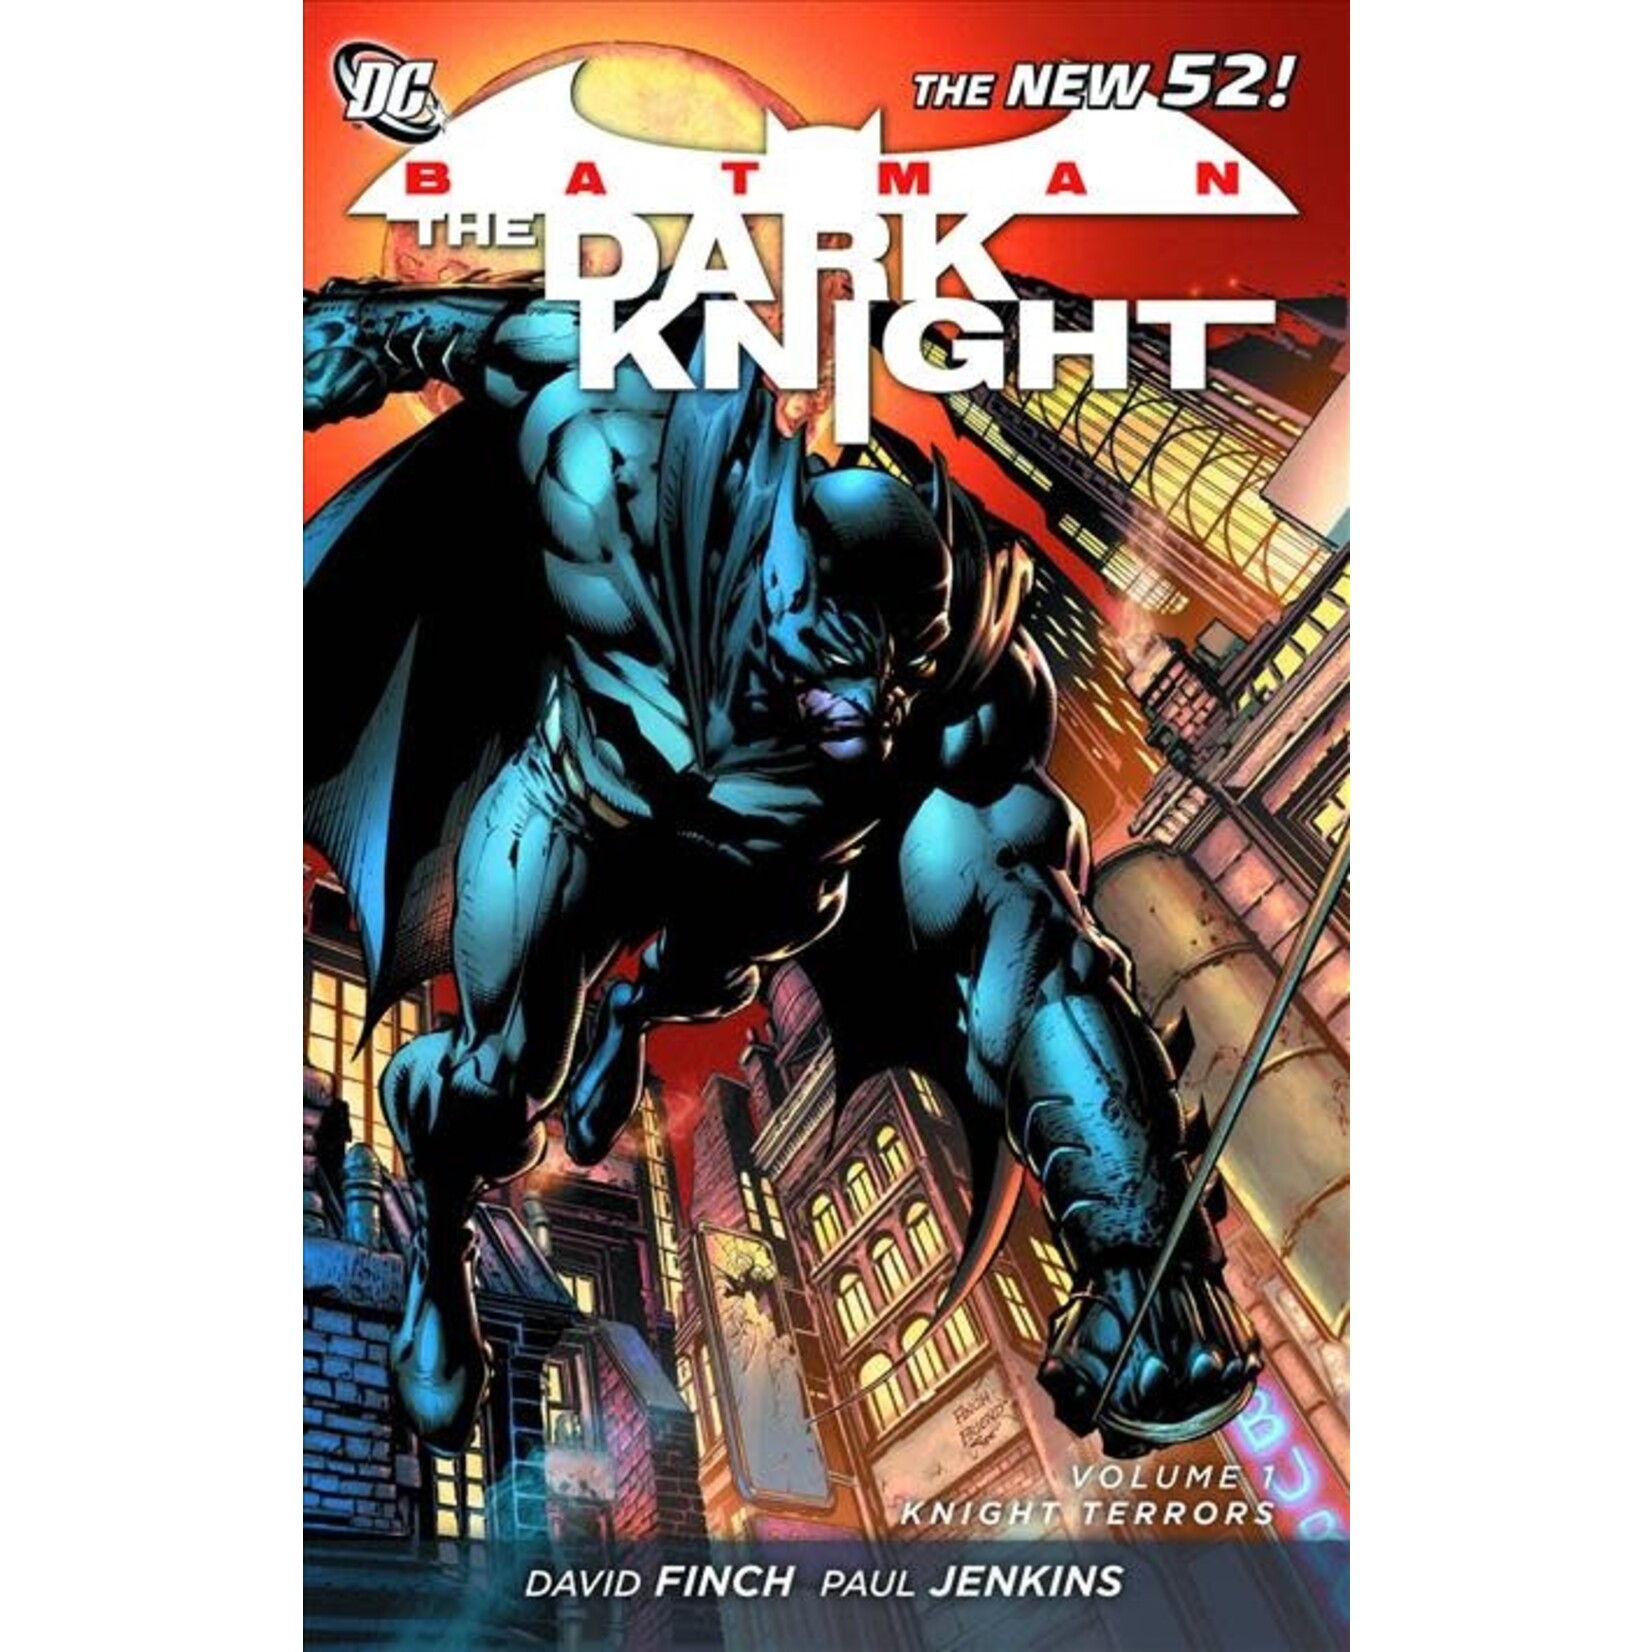 DC BATMAN DARK KNIGHT VOLUME 1-KNIGHT TERRORS-THE NEW 52